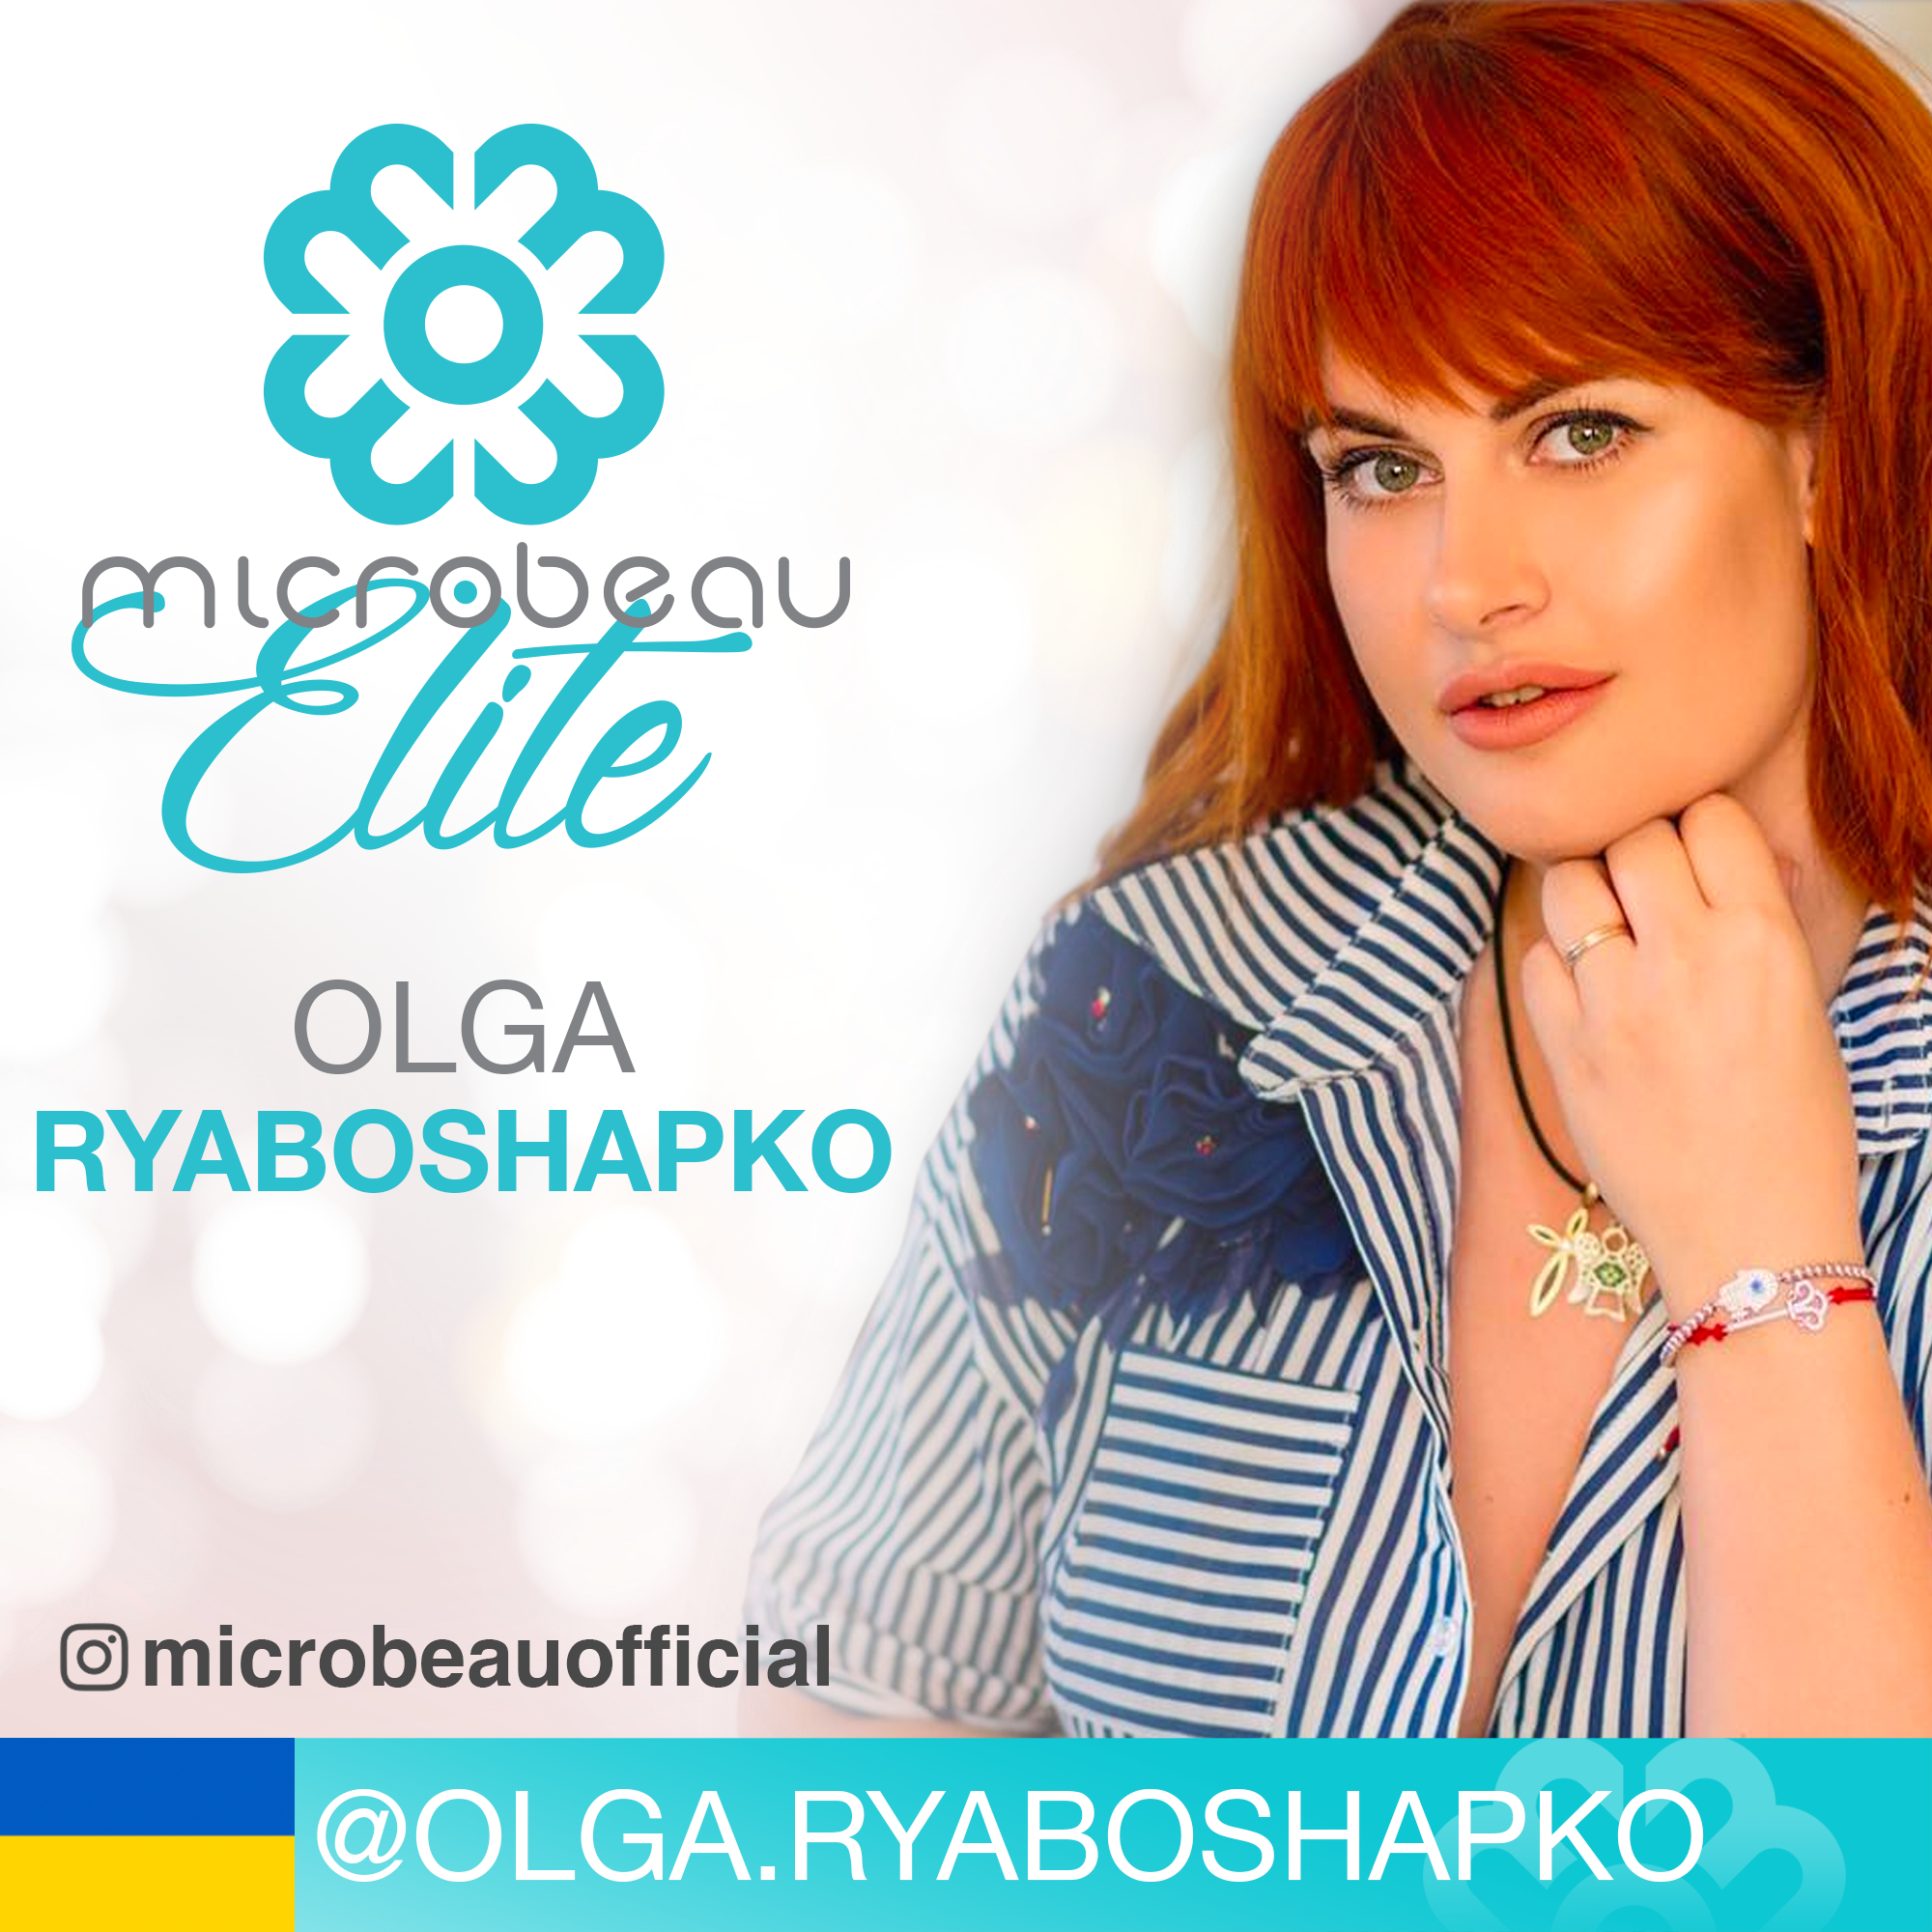 Olga Ryaboshapko